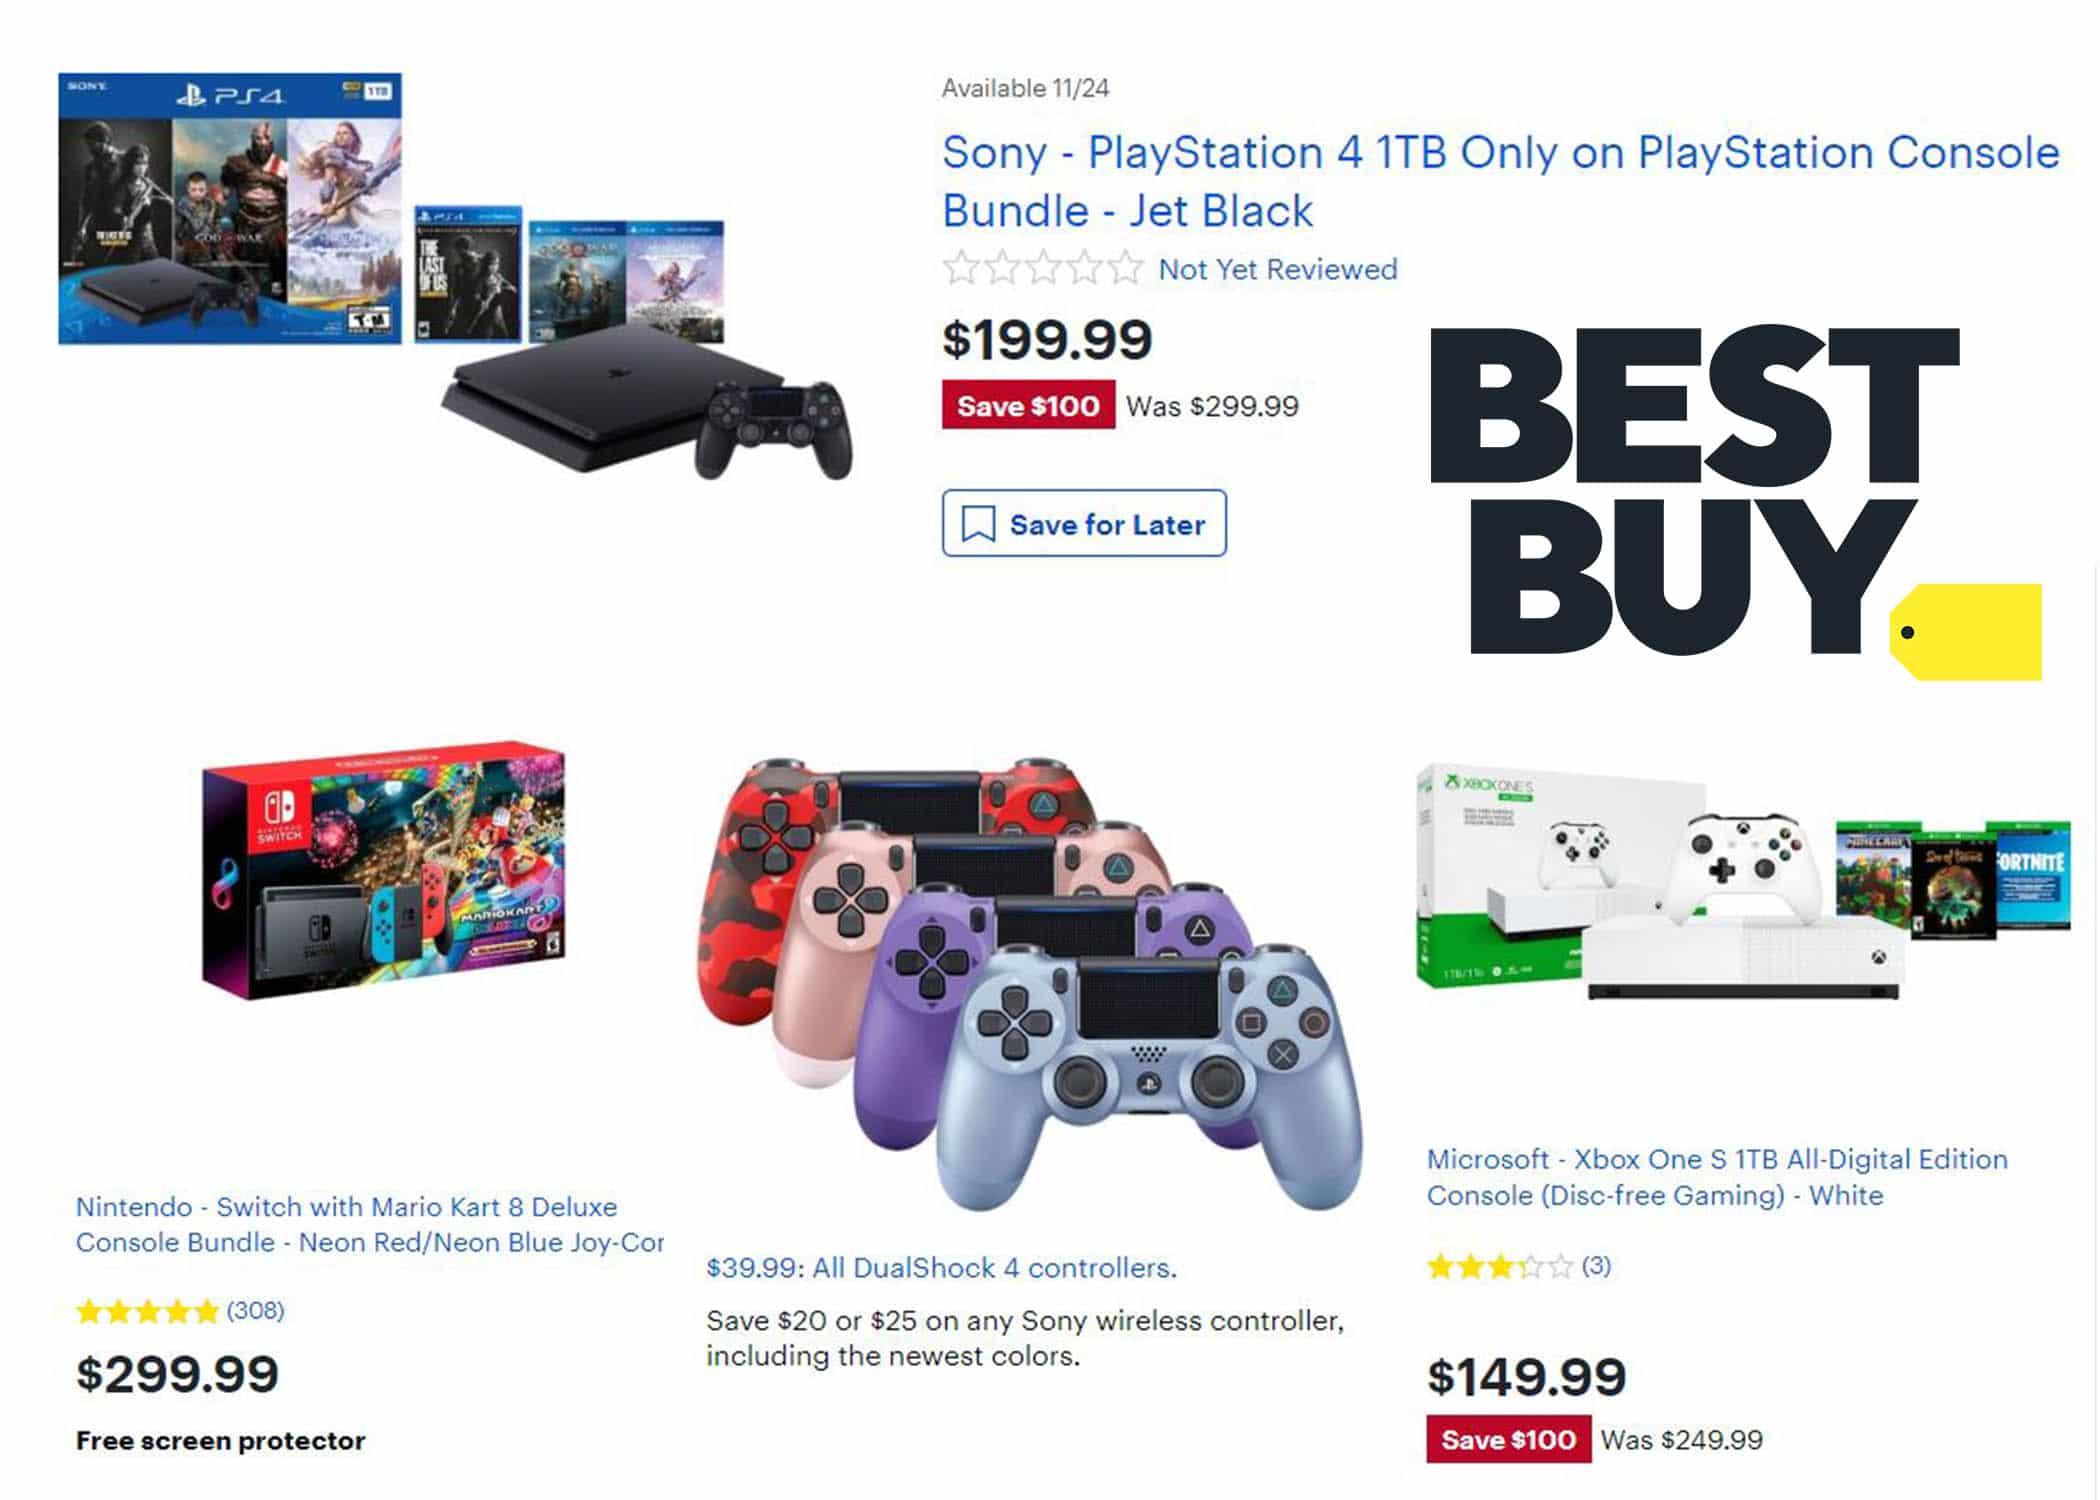 Best Buy Black Friday revela ofertas increíbles de PS4 bundle $199 Xbox One S bundle $149 y más